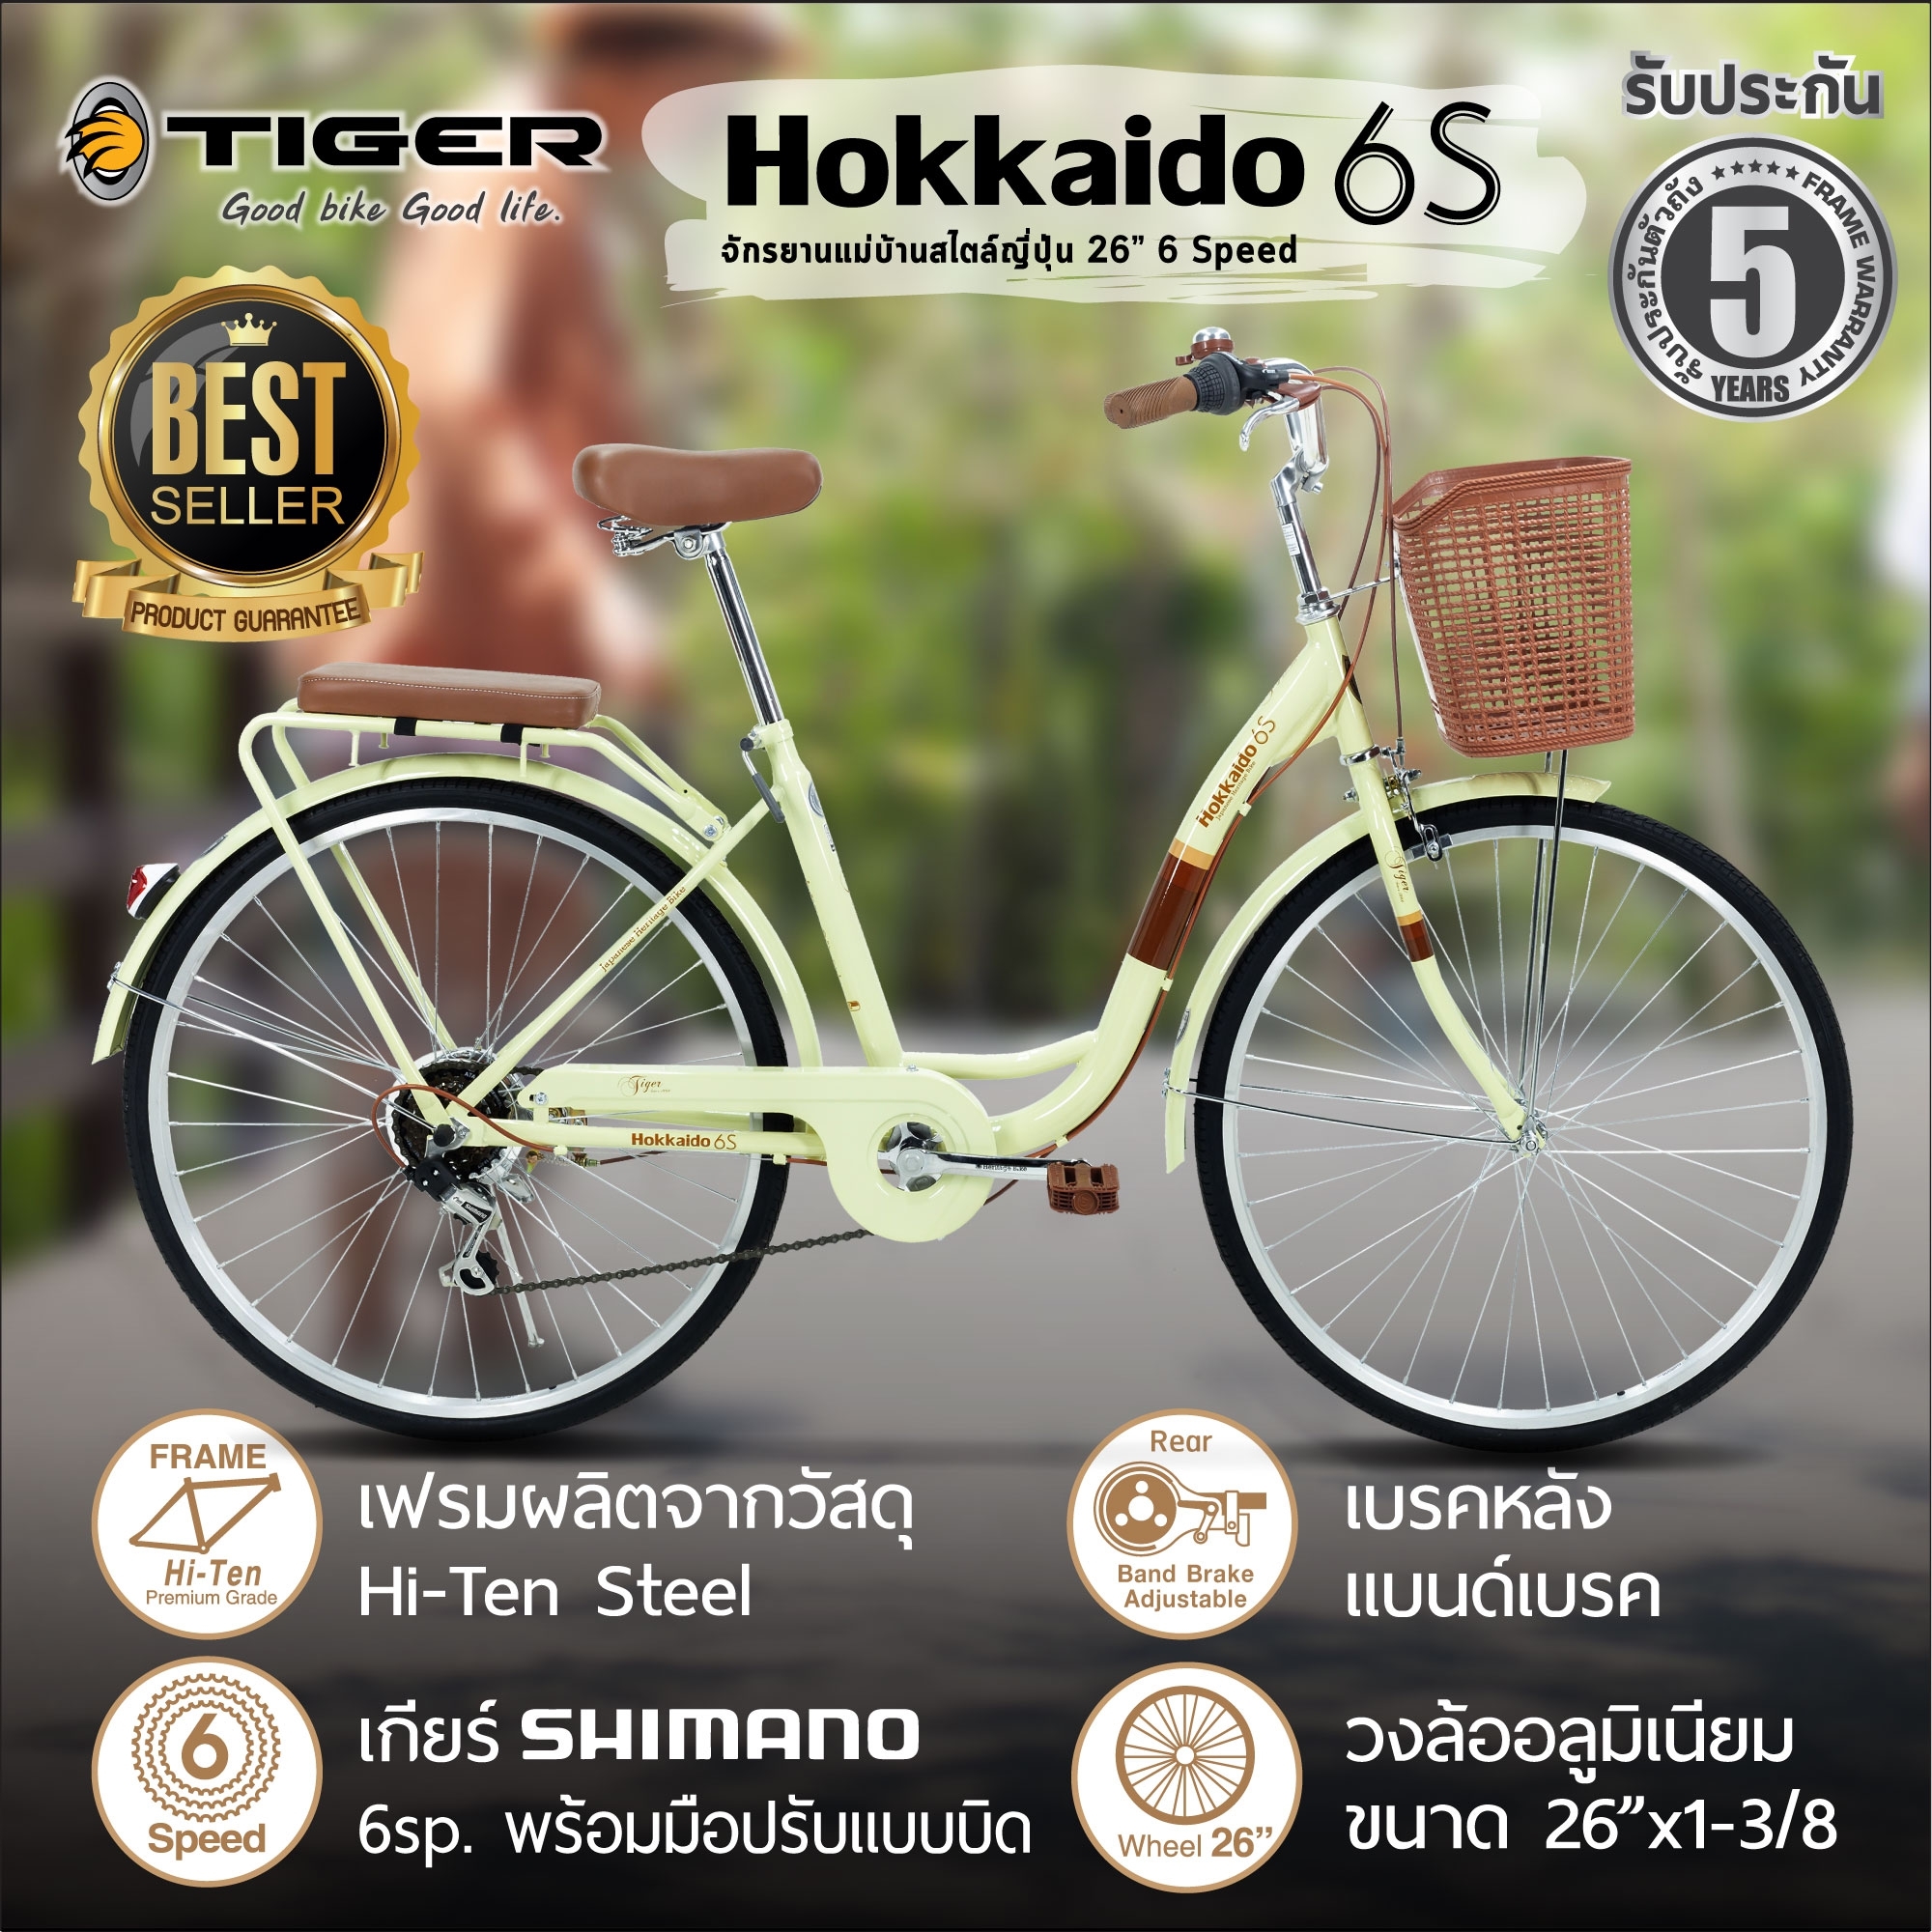 จักรยานแม่บ้าน Tiger รุ่น Hokkaido 6S มีเกียร์ 6 Speed รับประกันนาน 5 ปี จักรยานผู้ใหญ่ จักรยานญี่ปุ่น จักรยานมีเกียร hokkaido 6s จักรยานแม่บ้าน26